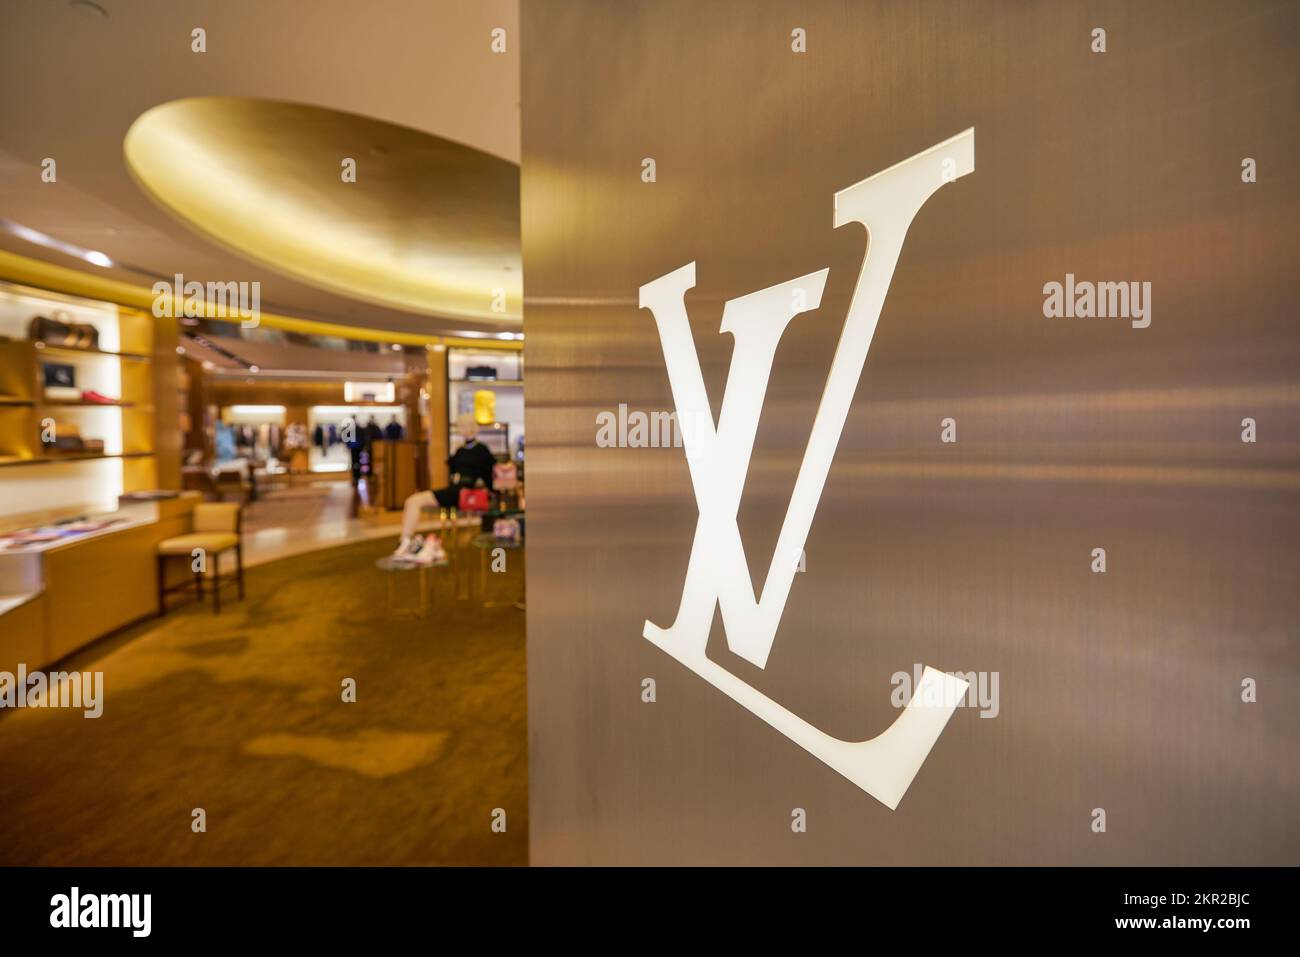 HONG KONG - CIRCA DECEMBER, 2019: close up shot of LV sign as seen at Elements shopping mall in Hong Kong. Stock Photo